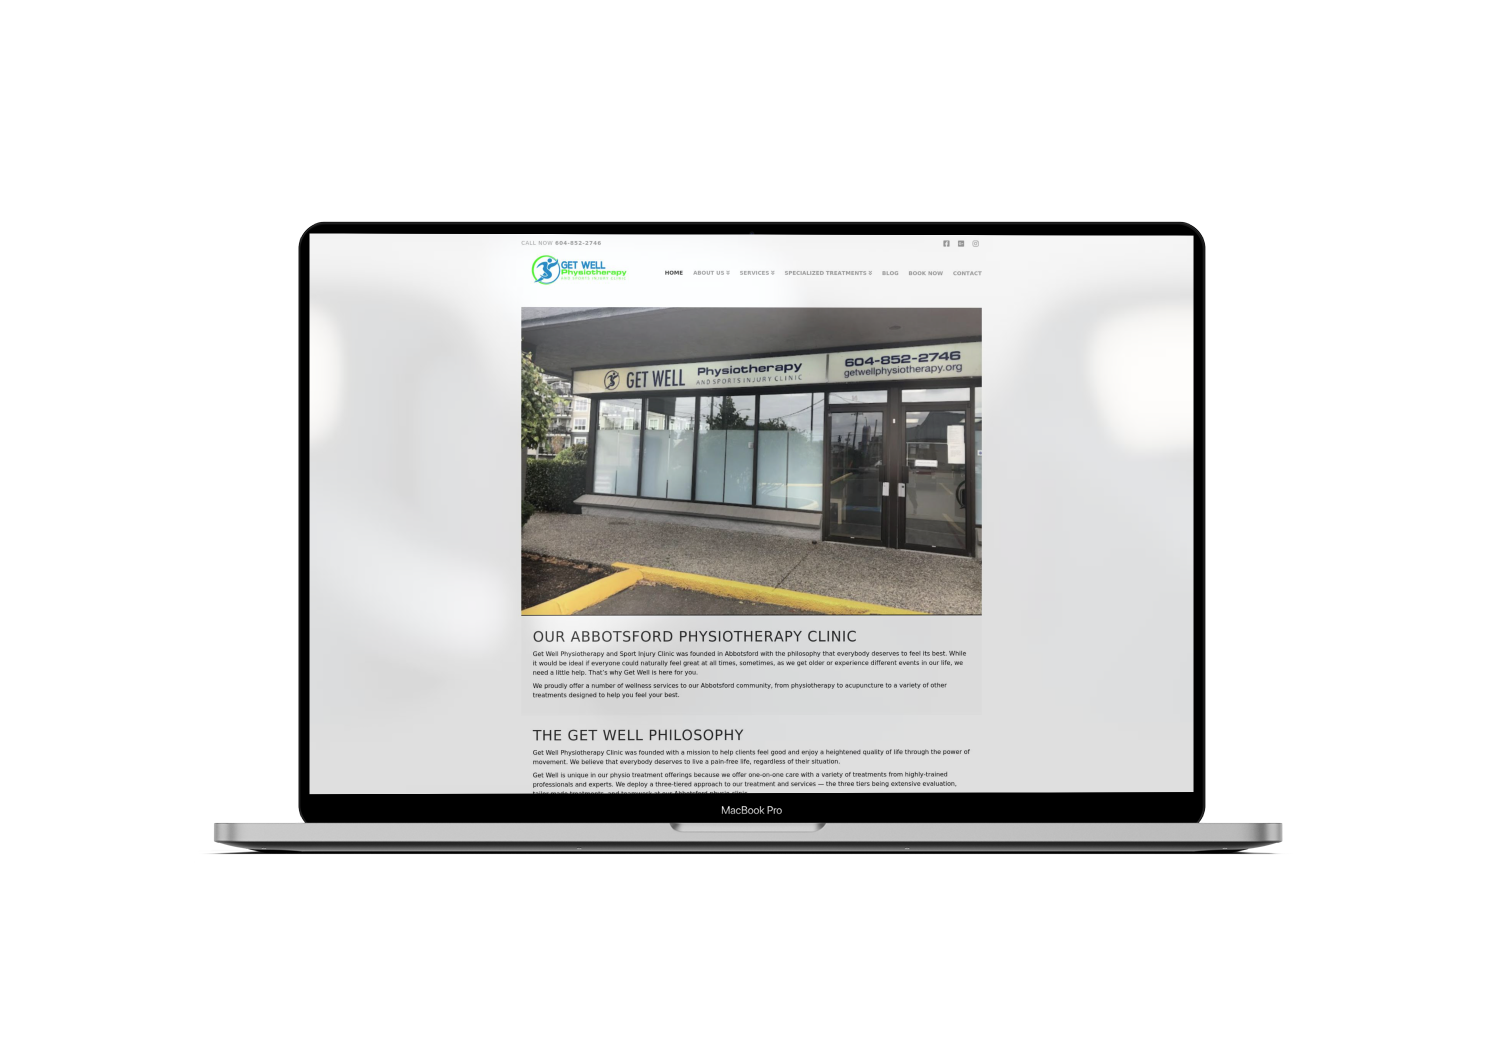 Mockup Mac Website Design for Real Estate Agency